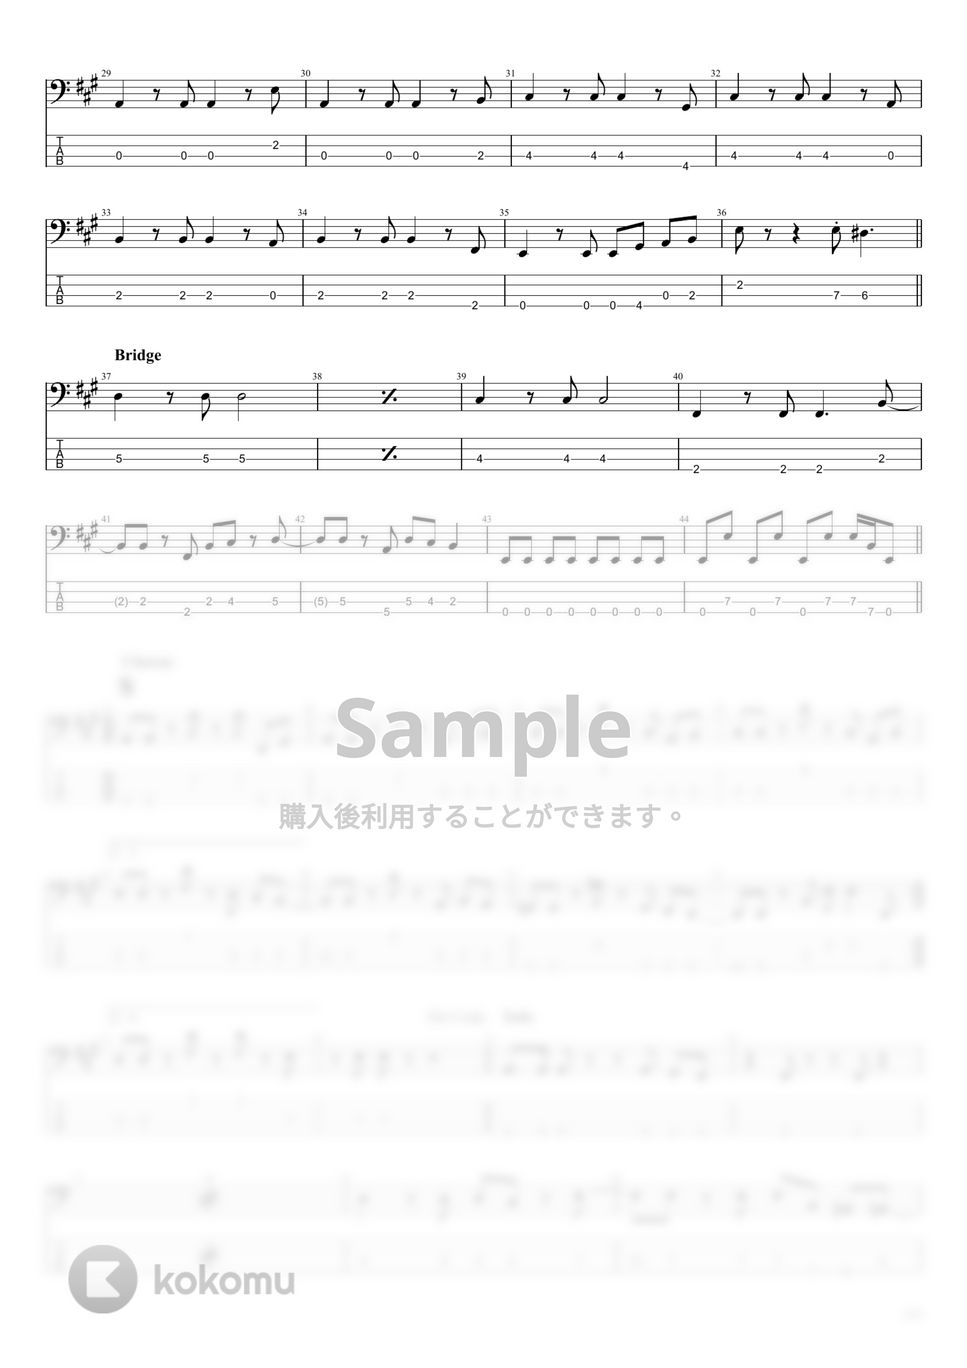 松田聖子 USA ライトコンビネーション 楽譜 【再入荷！】 5772円引き